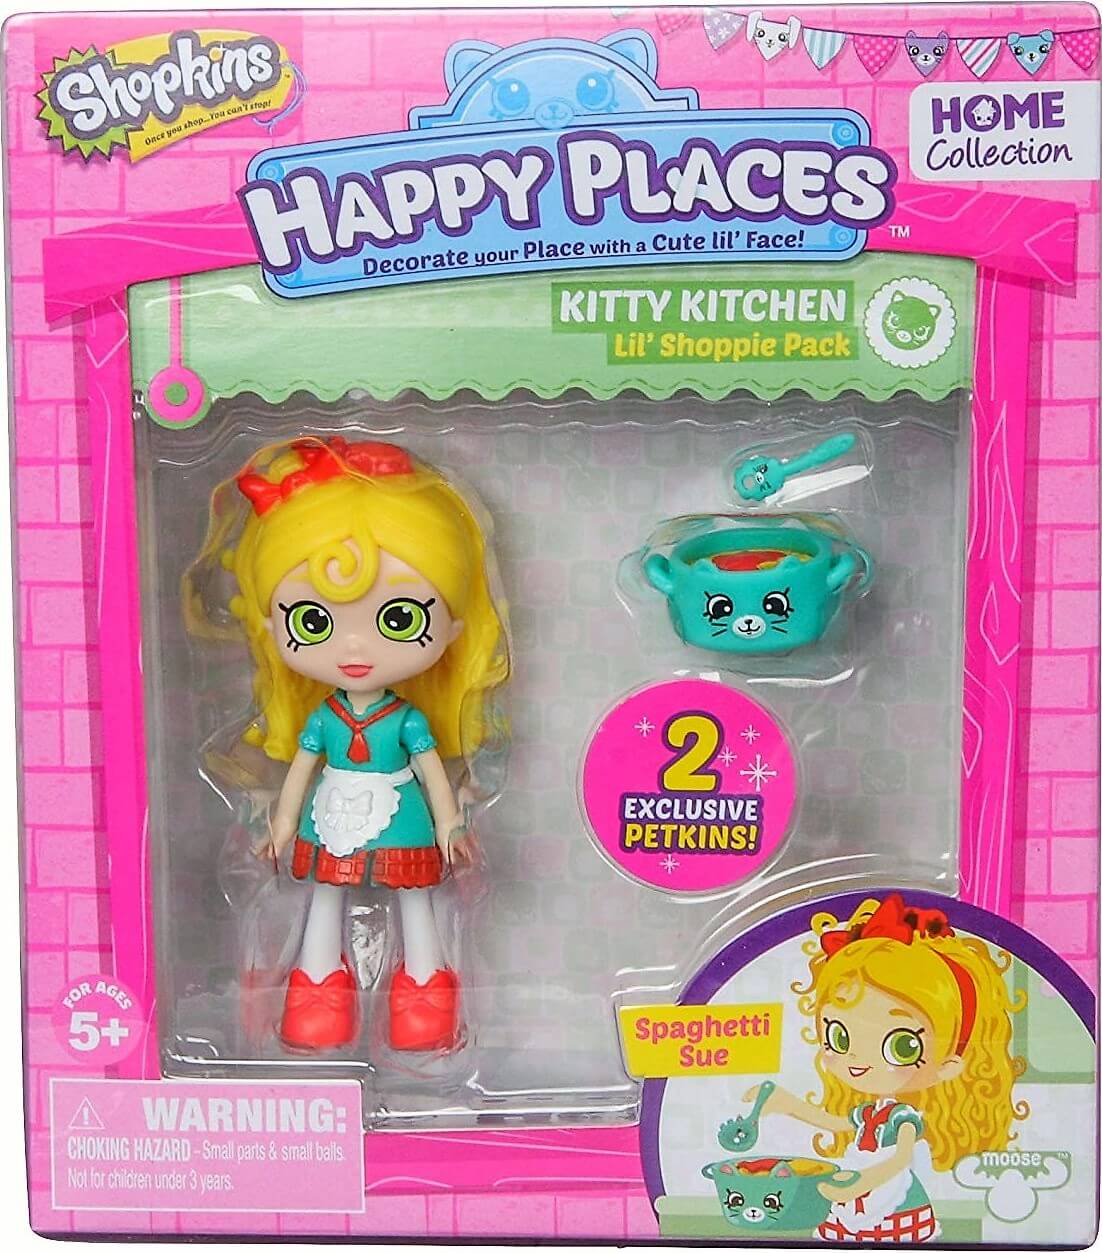 Lil Shoppie Pack Kitty Kitchen Spaghetti Sue ( Giochi Preziosi 56323 ) imagen c